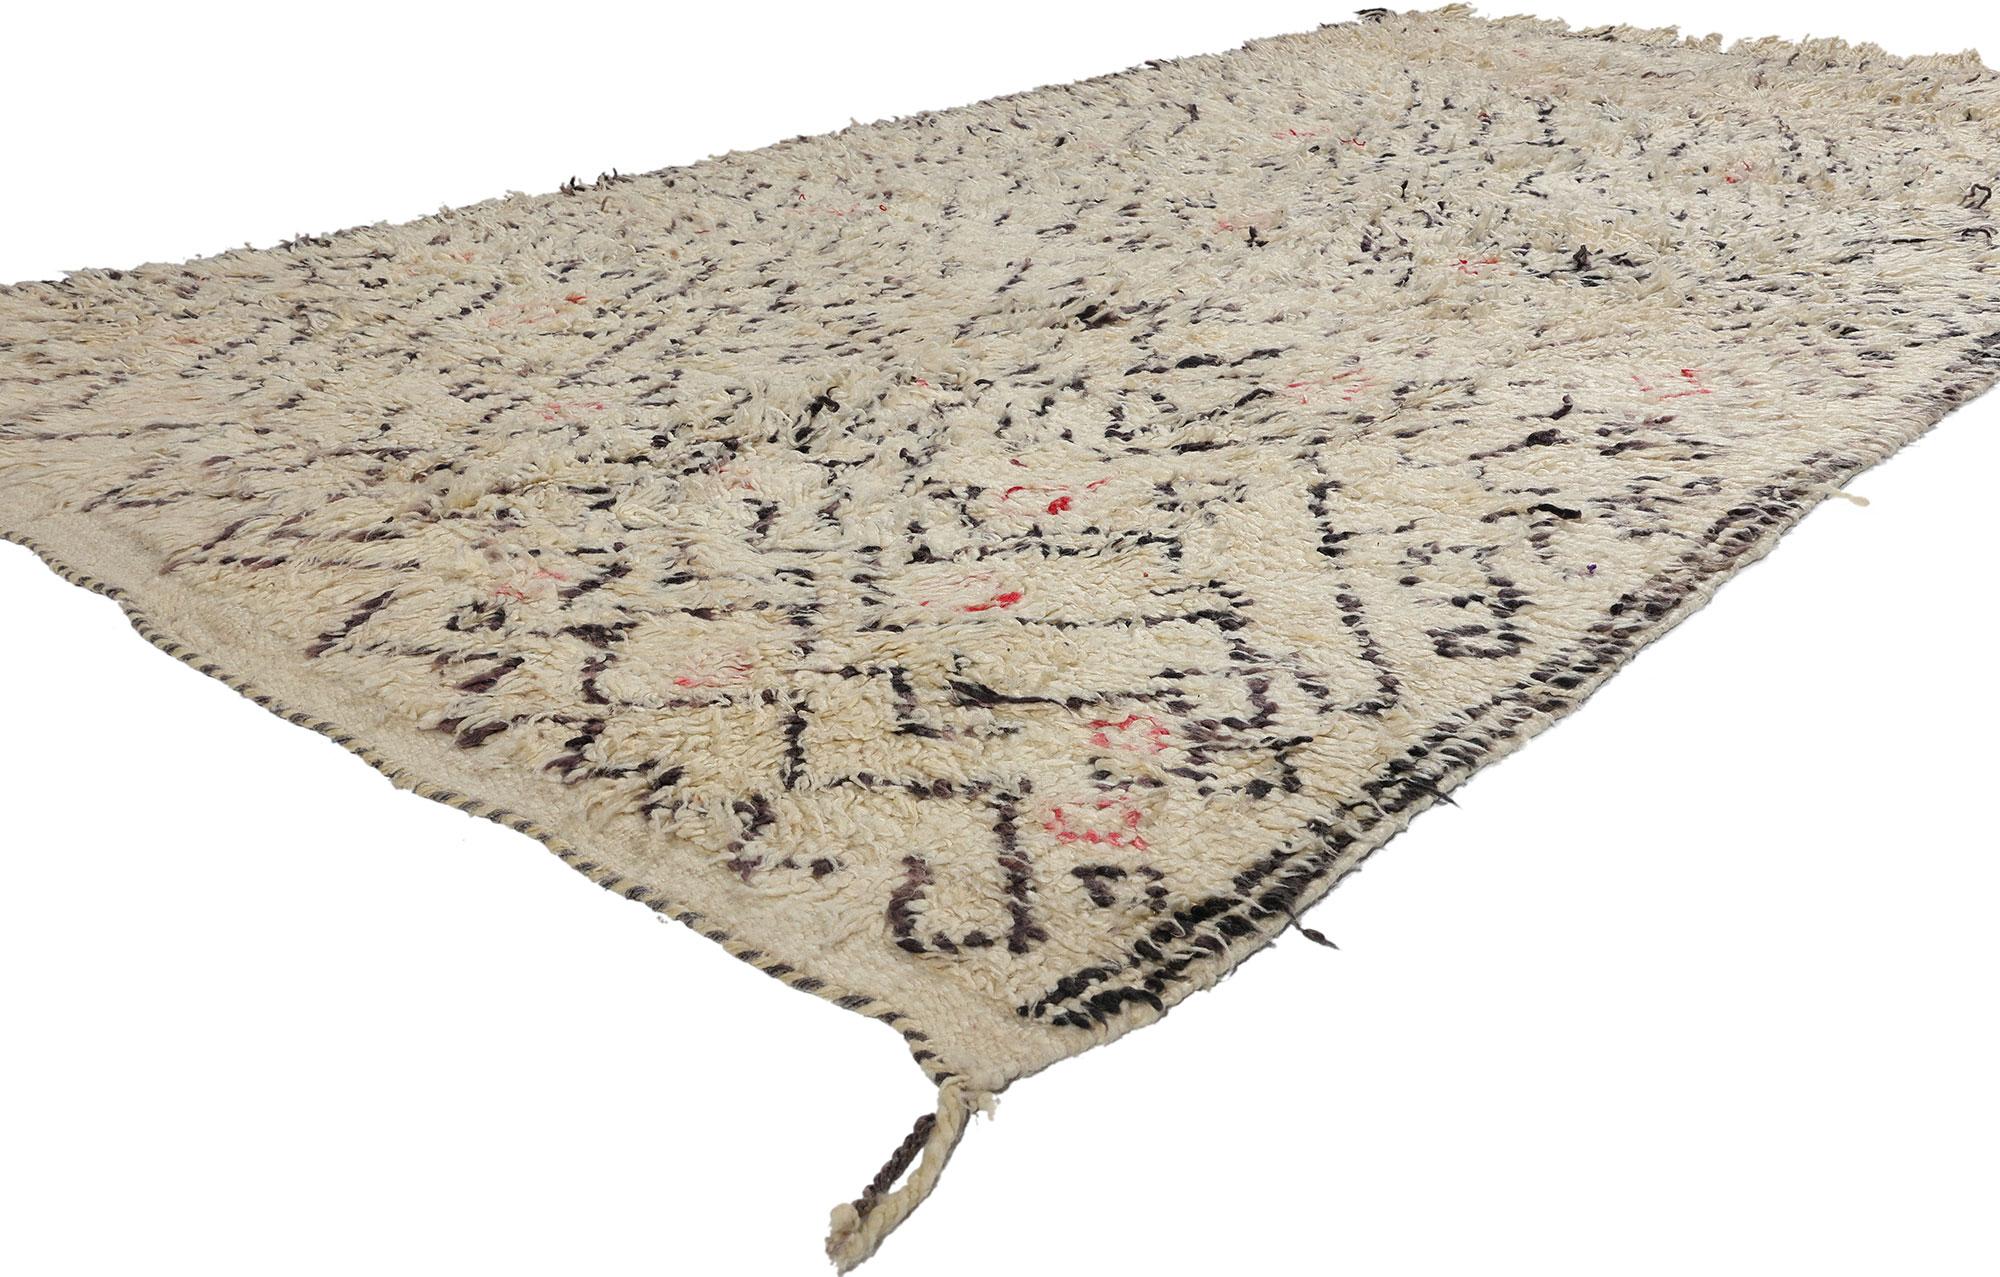 21724 Tapis marocain vintage en azilal, 04'09 x 09'00. Les tapis marocains neutres Azilal, tissés à la main par des artisans berbères dans la région d'Azilal au Maroc, présentent des tons discrets comme le beige, le crème, le taupe et le gris, ce